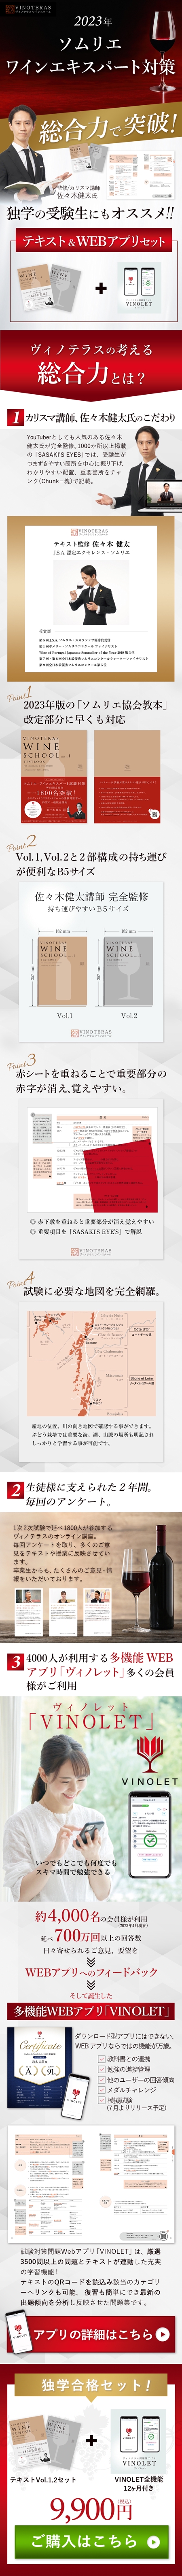 Hayane_design (h1022)さんのワインスクールのテキスト＆問題集販売ページのLPデザイン制作（デザインのみ）への提案